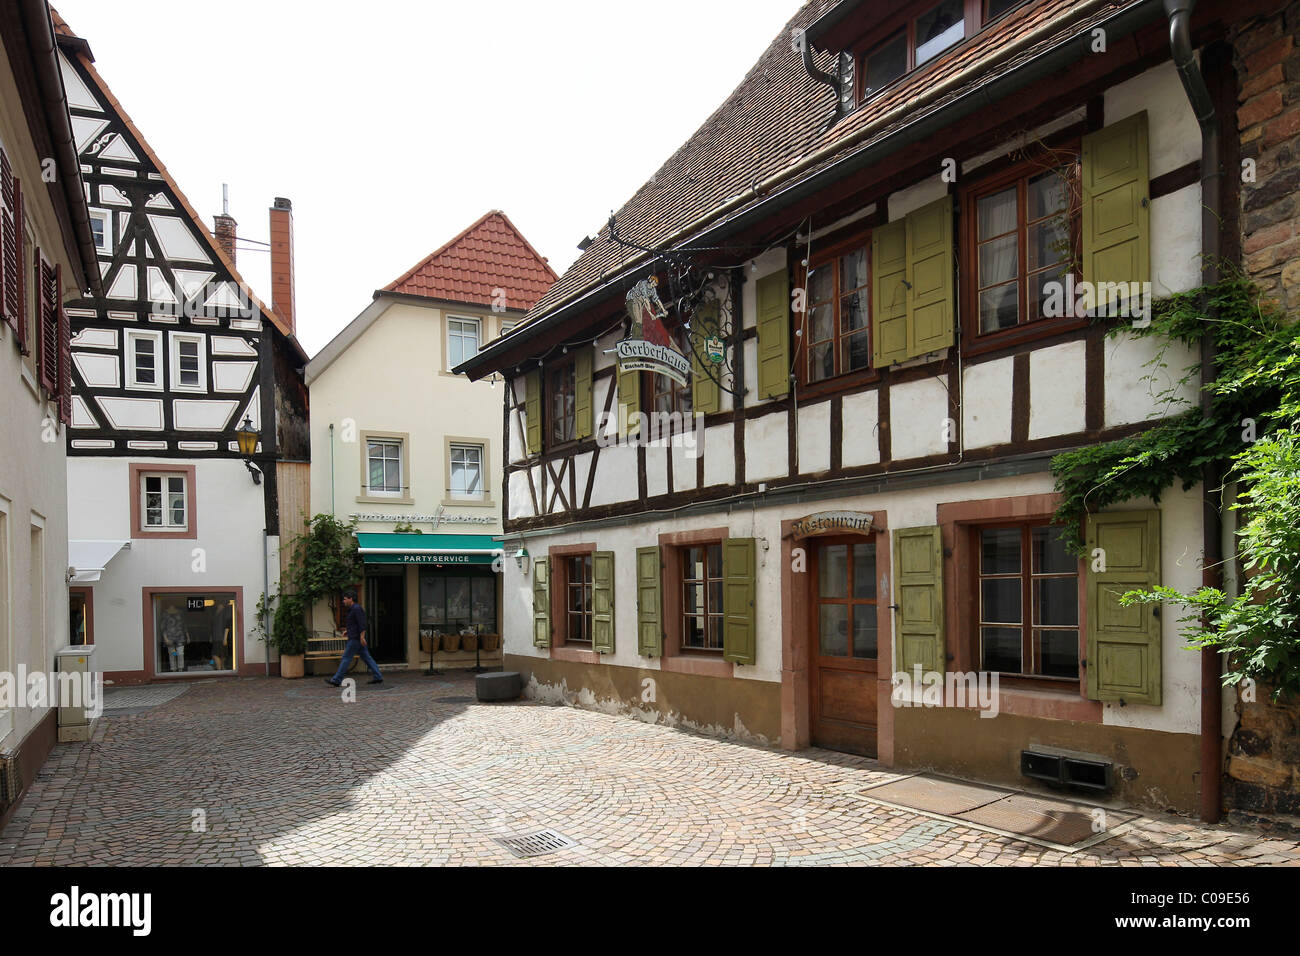 Tipiche case a graticcio nella città vecchia di Neustadt an der Weinstrasse, Renania-Palatinato, Germania, Europa Foto Stock